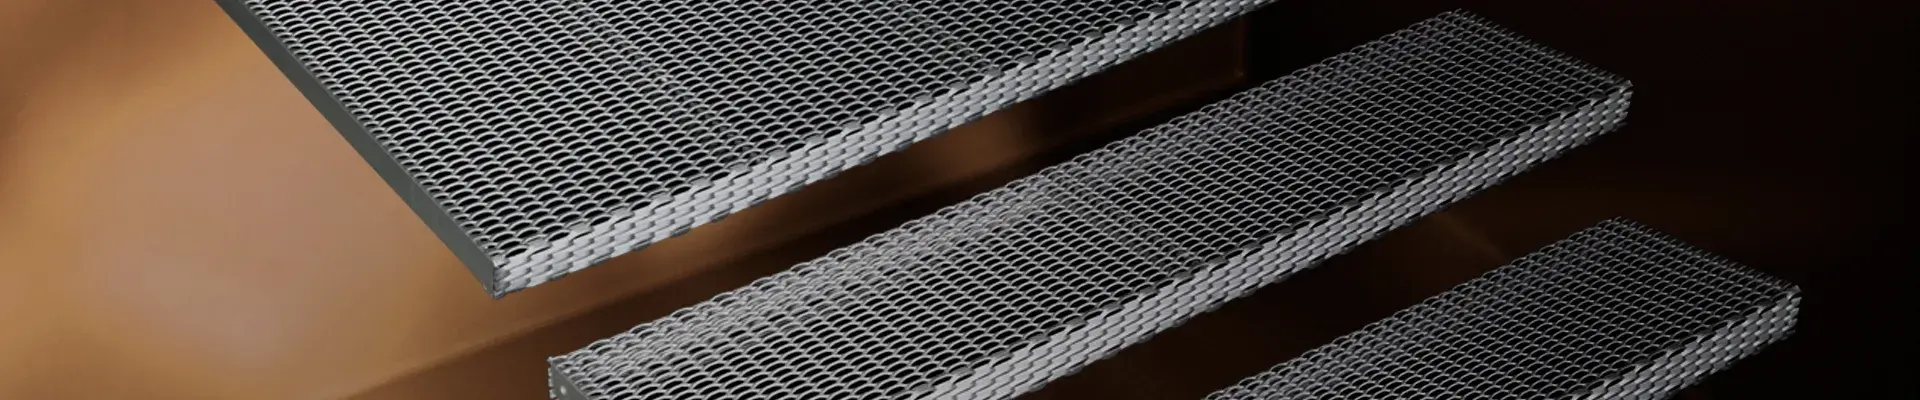 Peldaños y superficies de paso en metal estirado